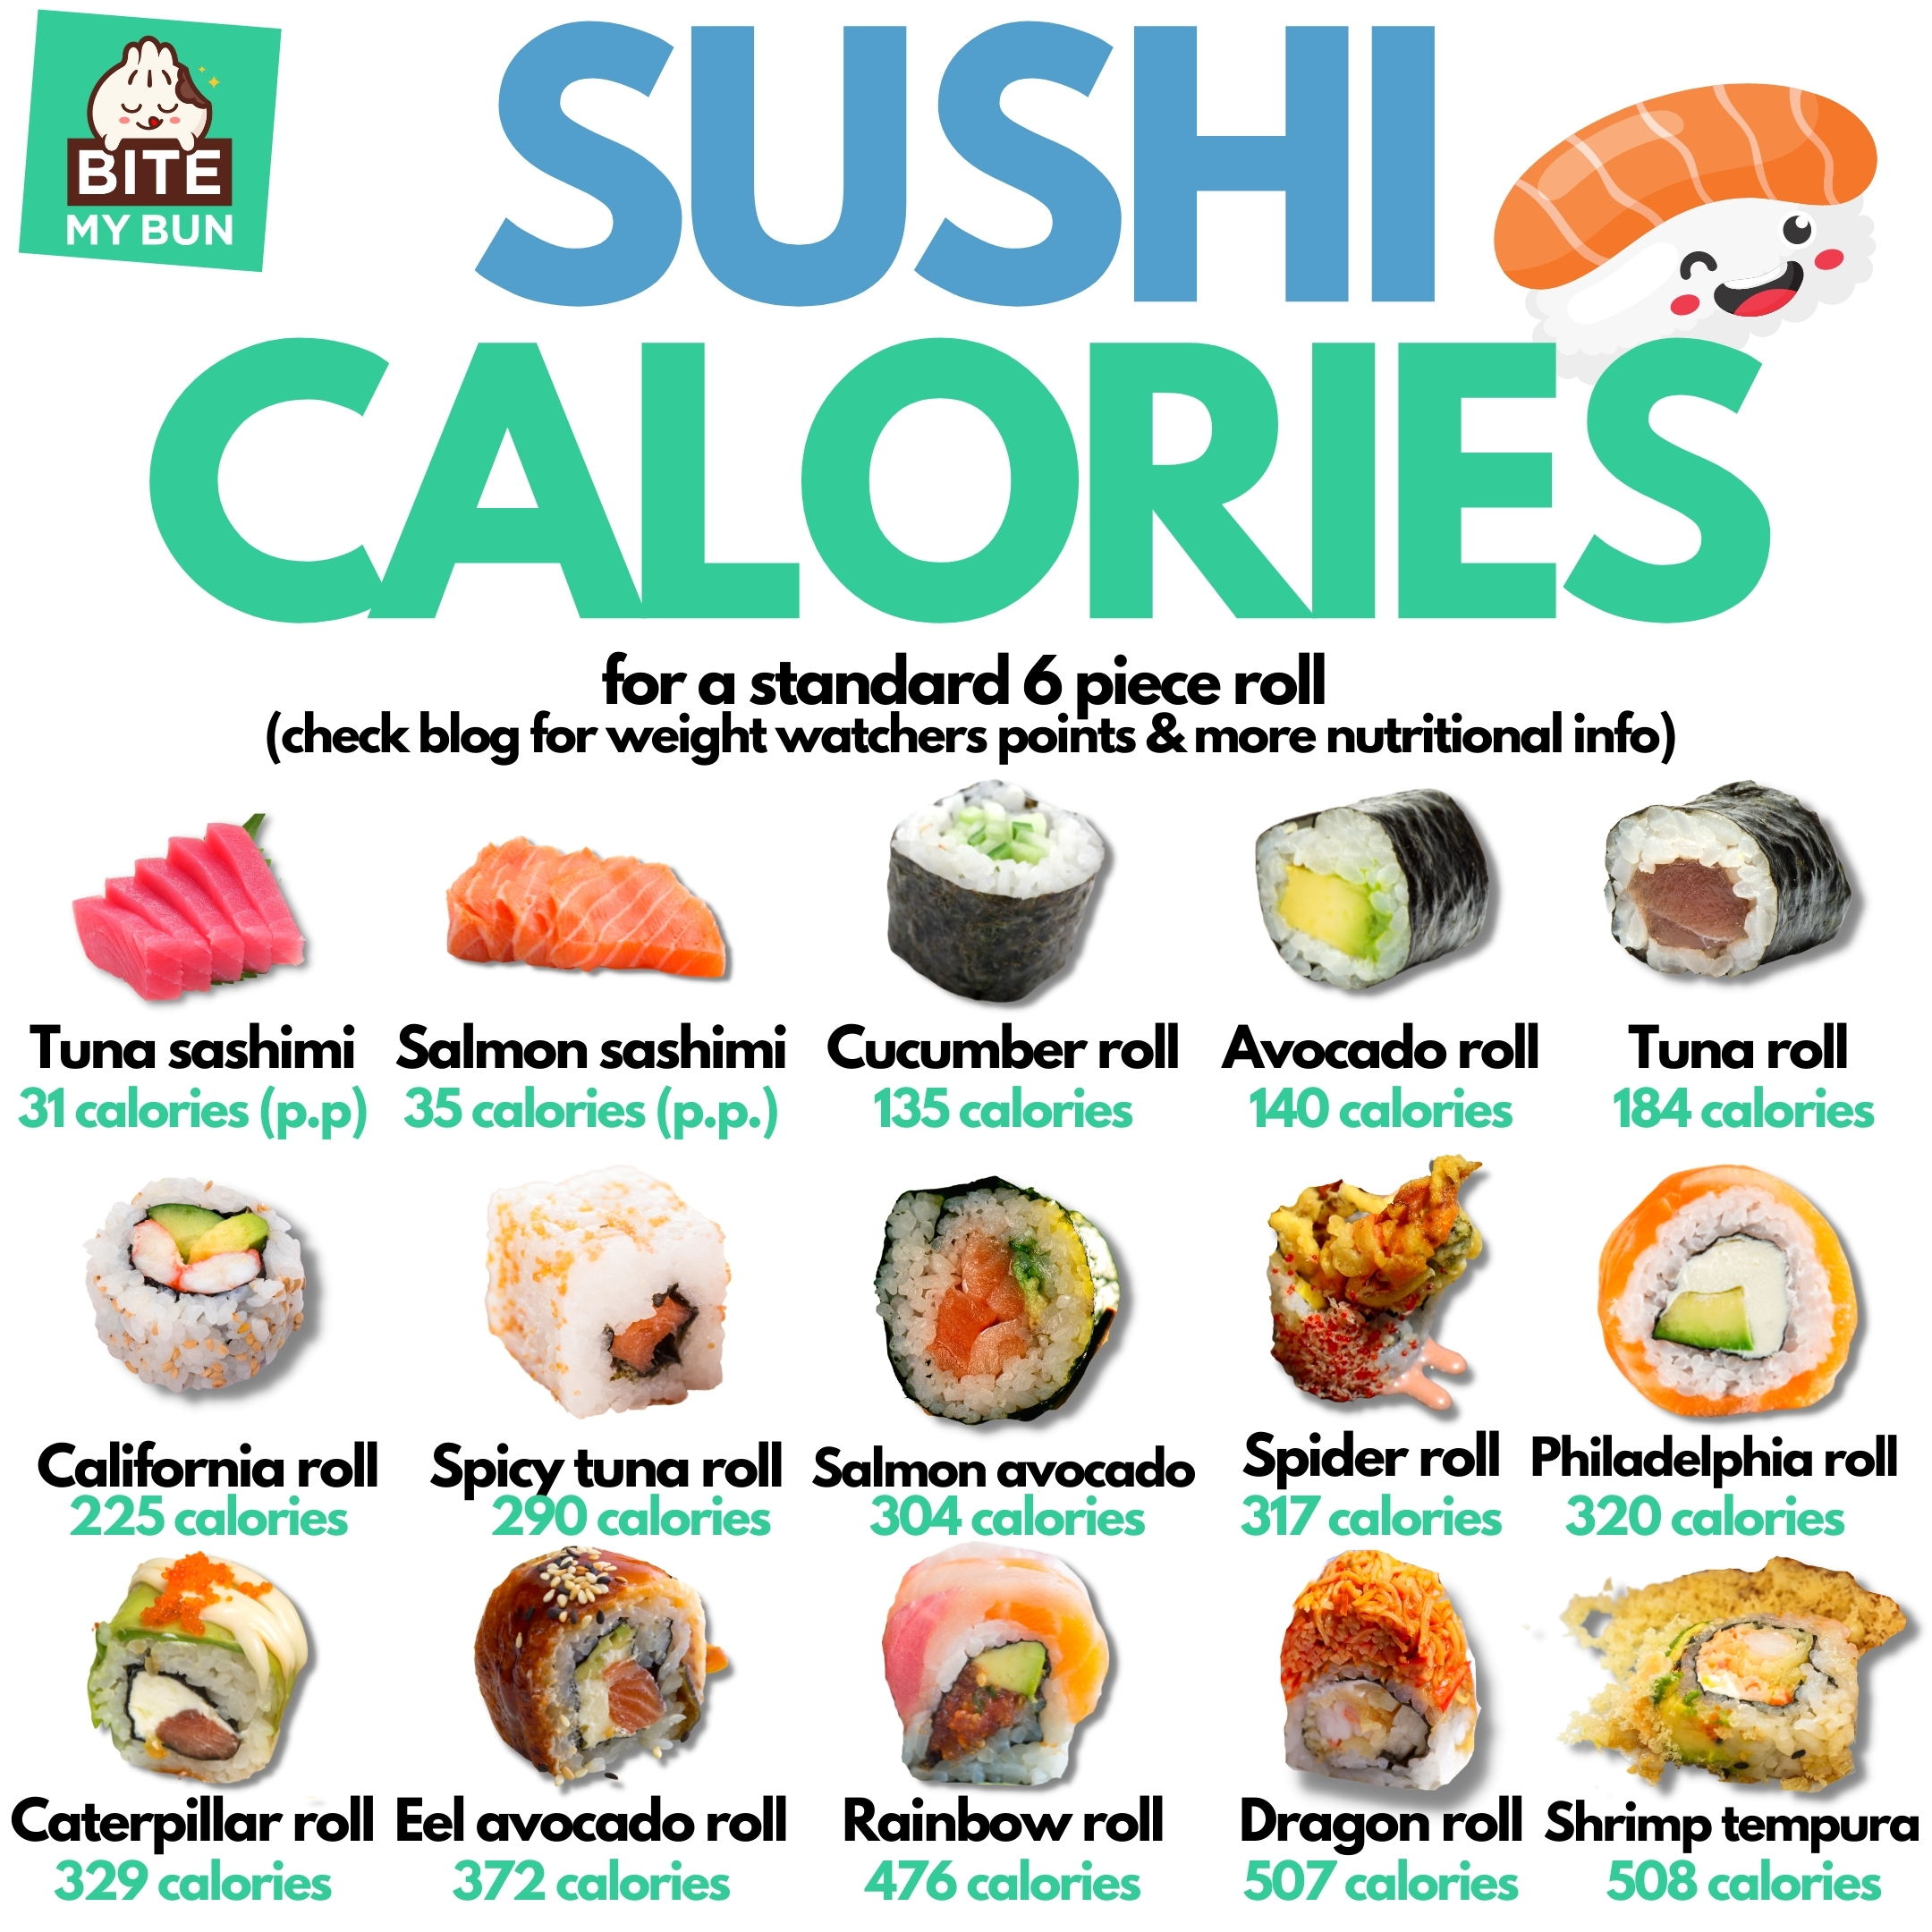 Sushi calories